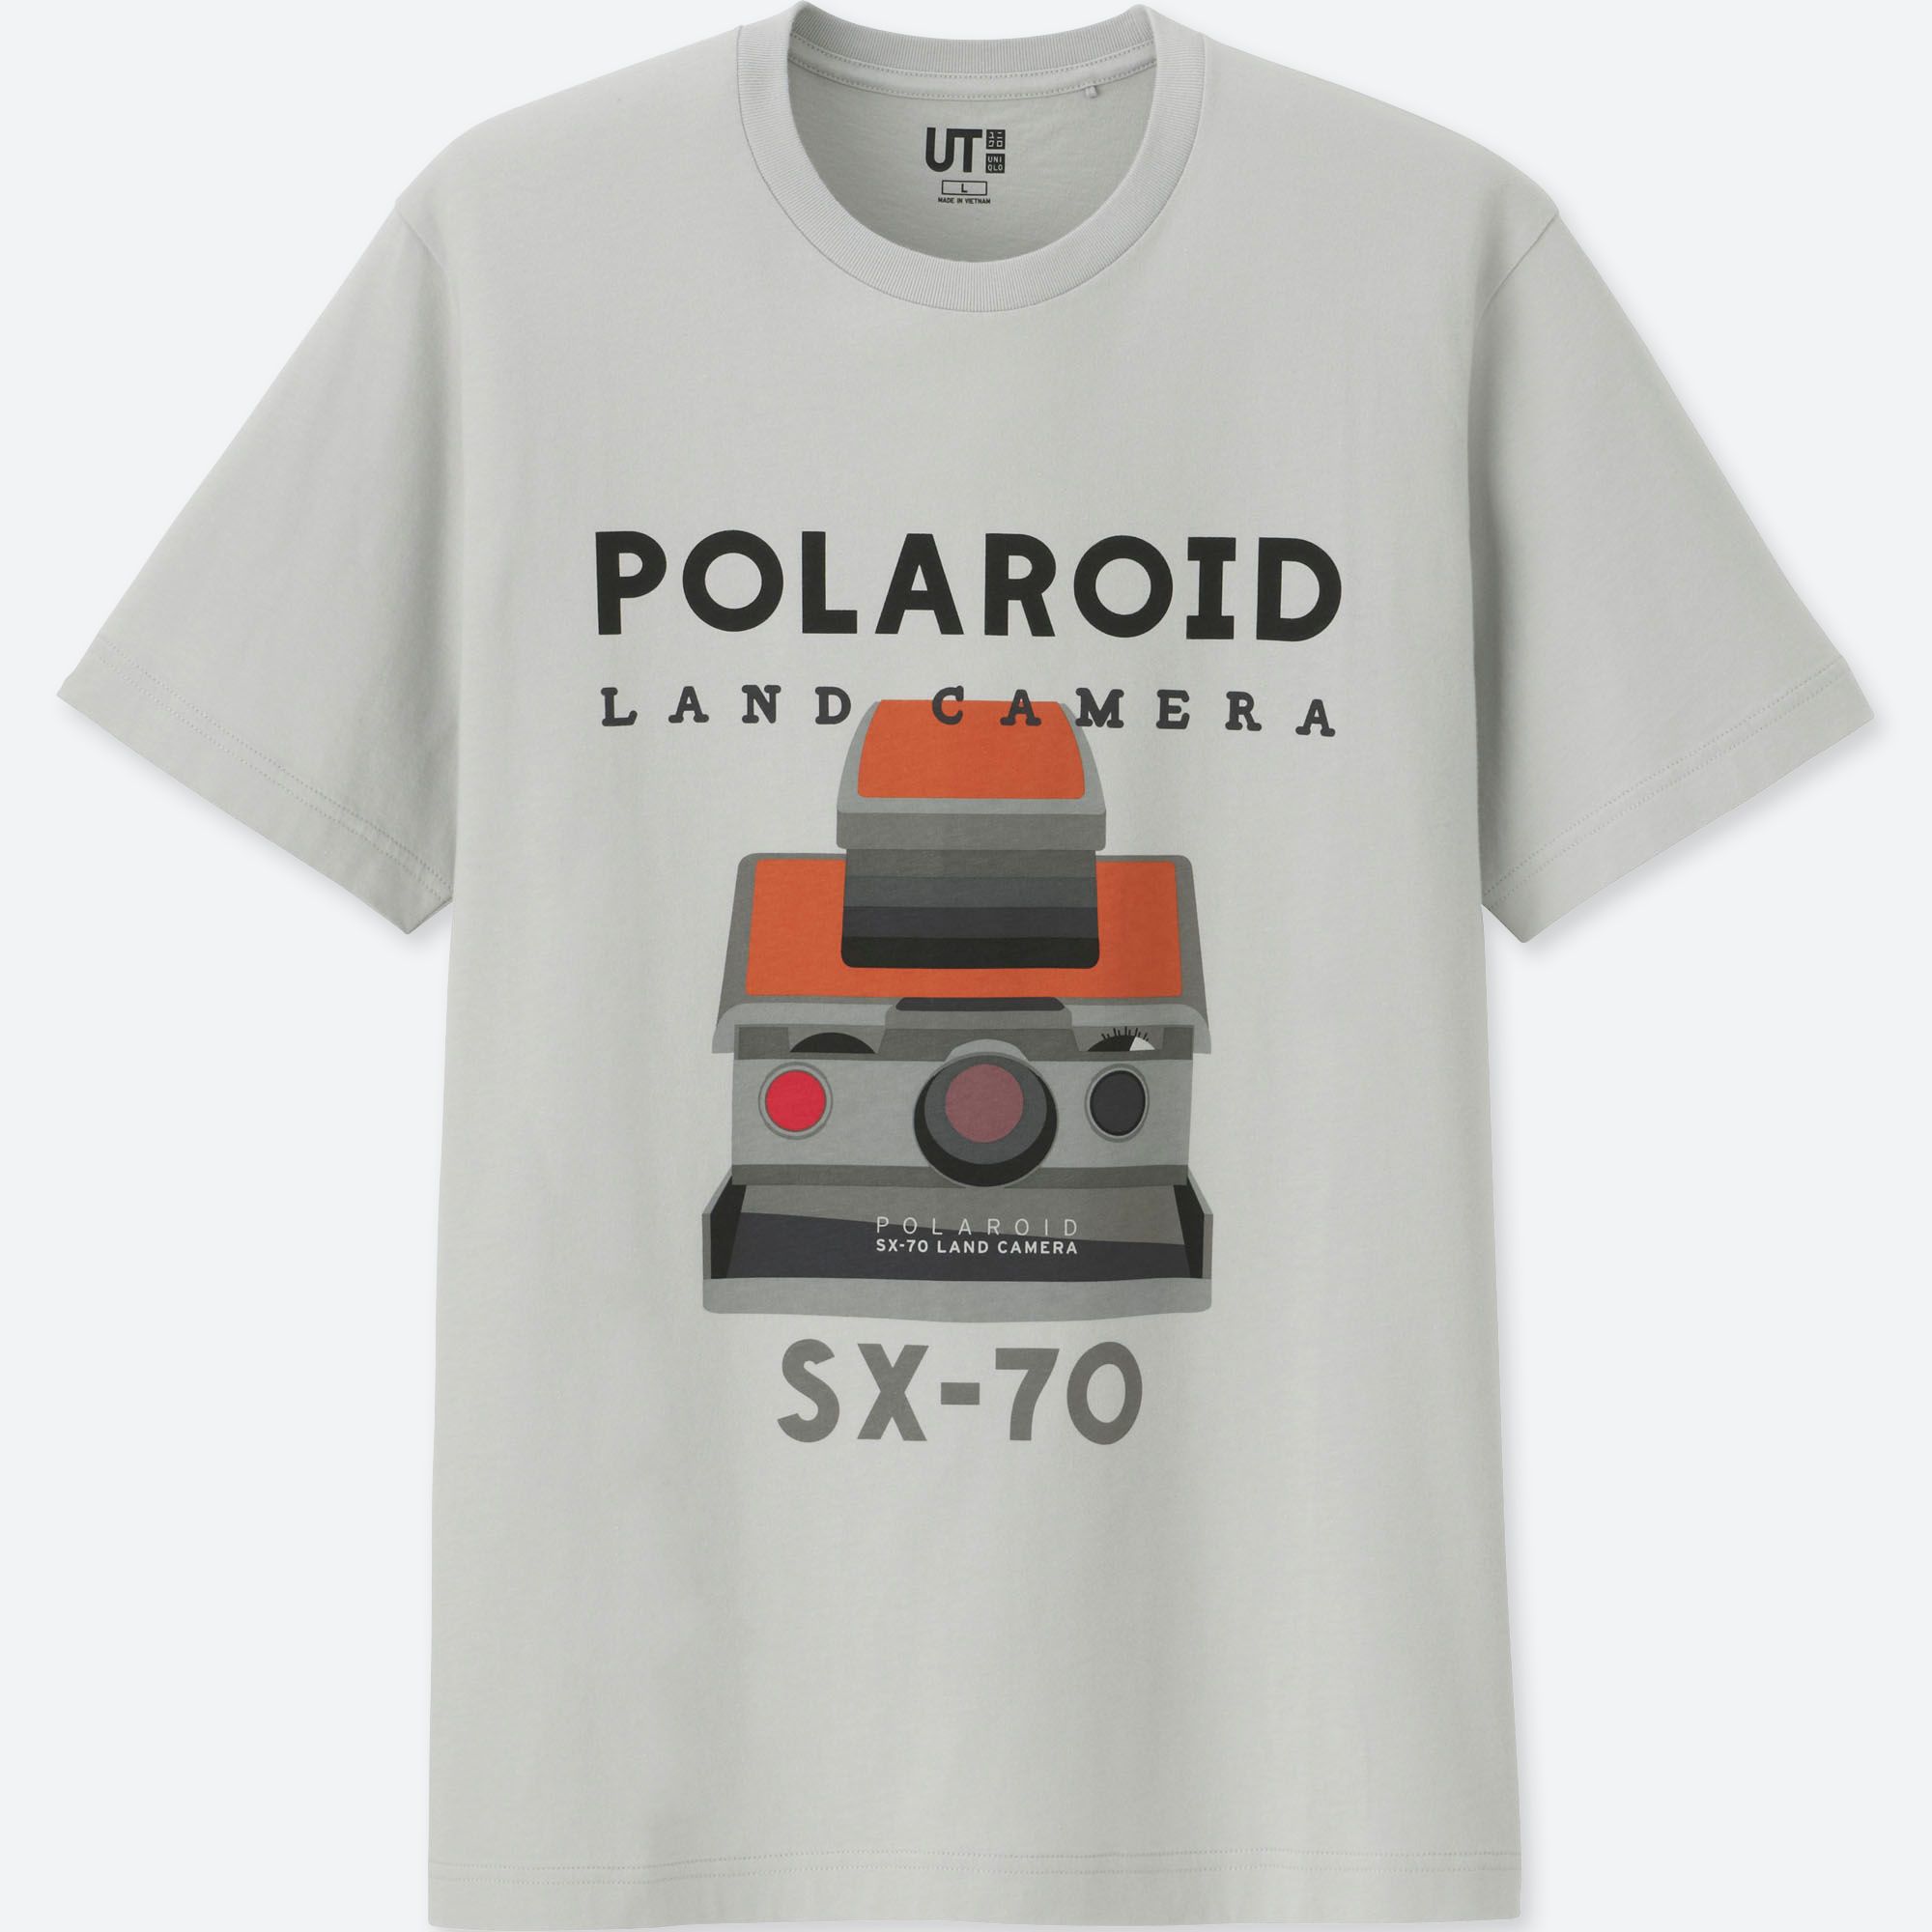 Wear Pocky and Polaroid with Pride: UNIQLO's Retro-Style 'The Brand' Line